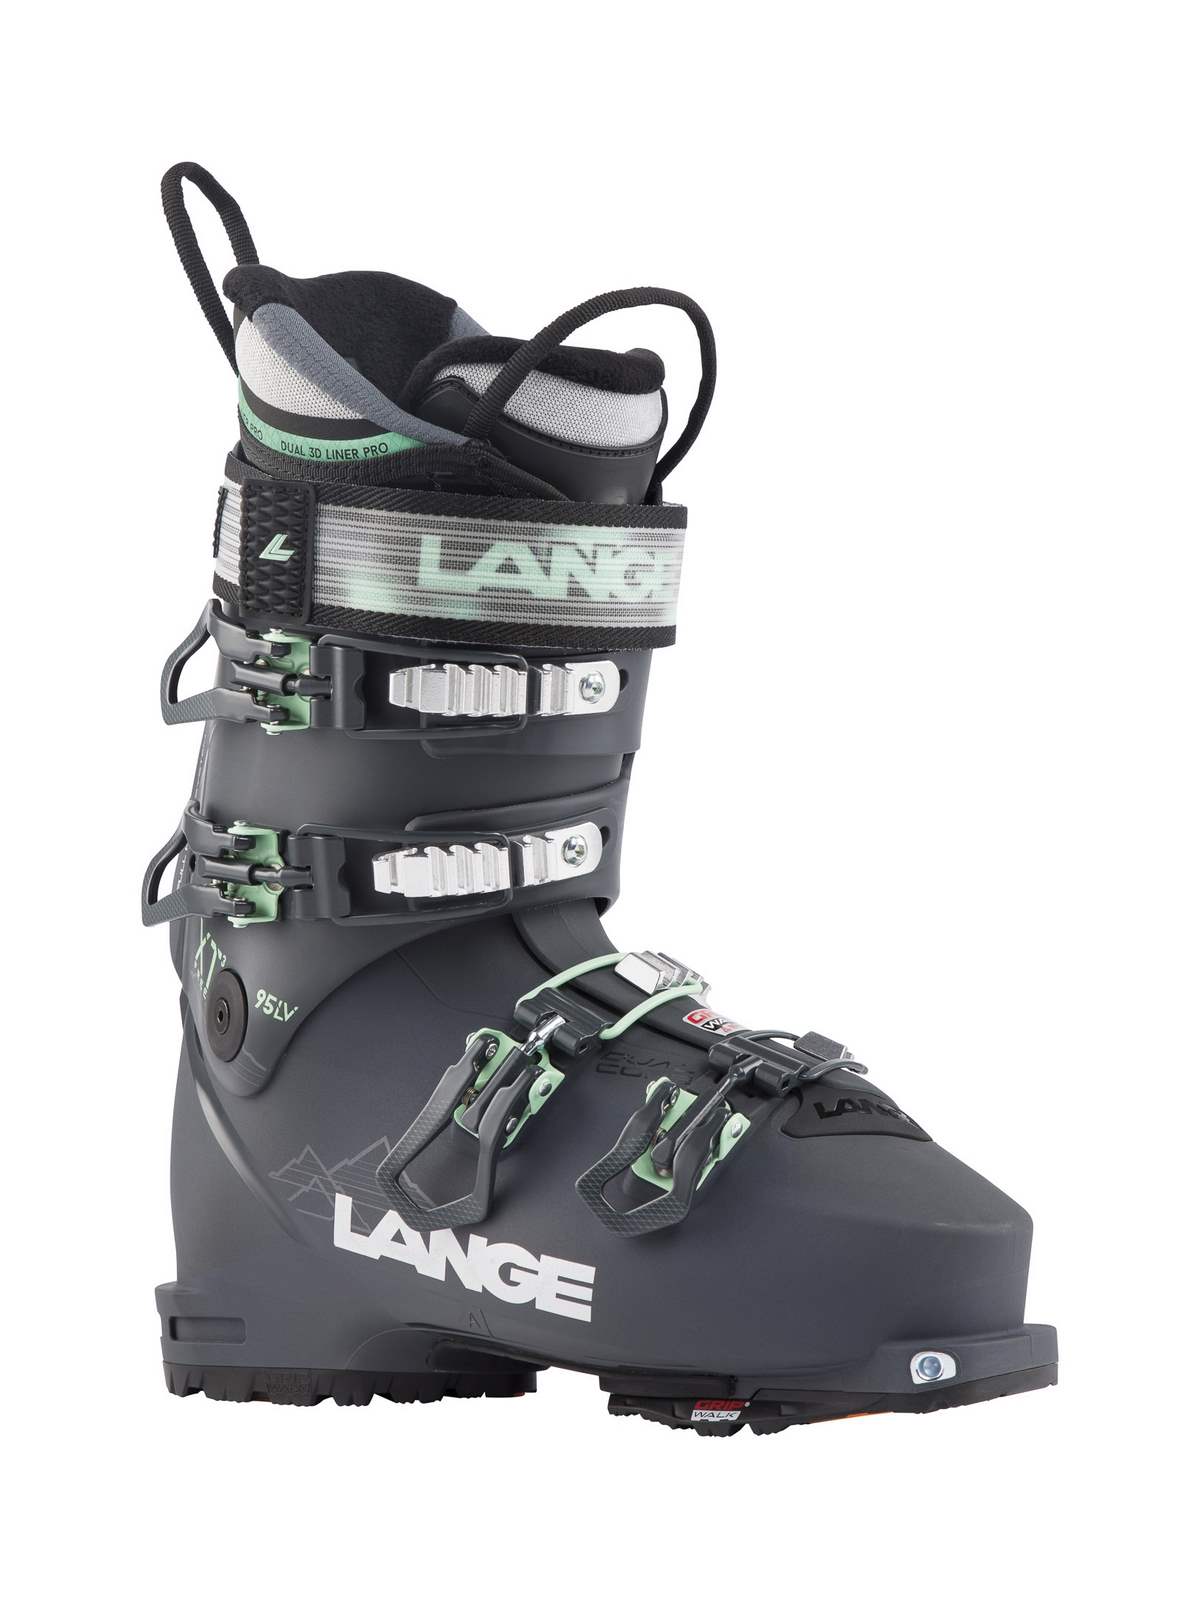 Buty narciarskie damskie LANGE XT3 FREE 95 W LV GW flex95